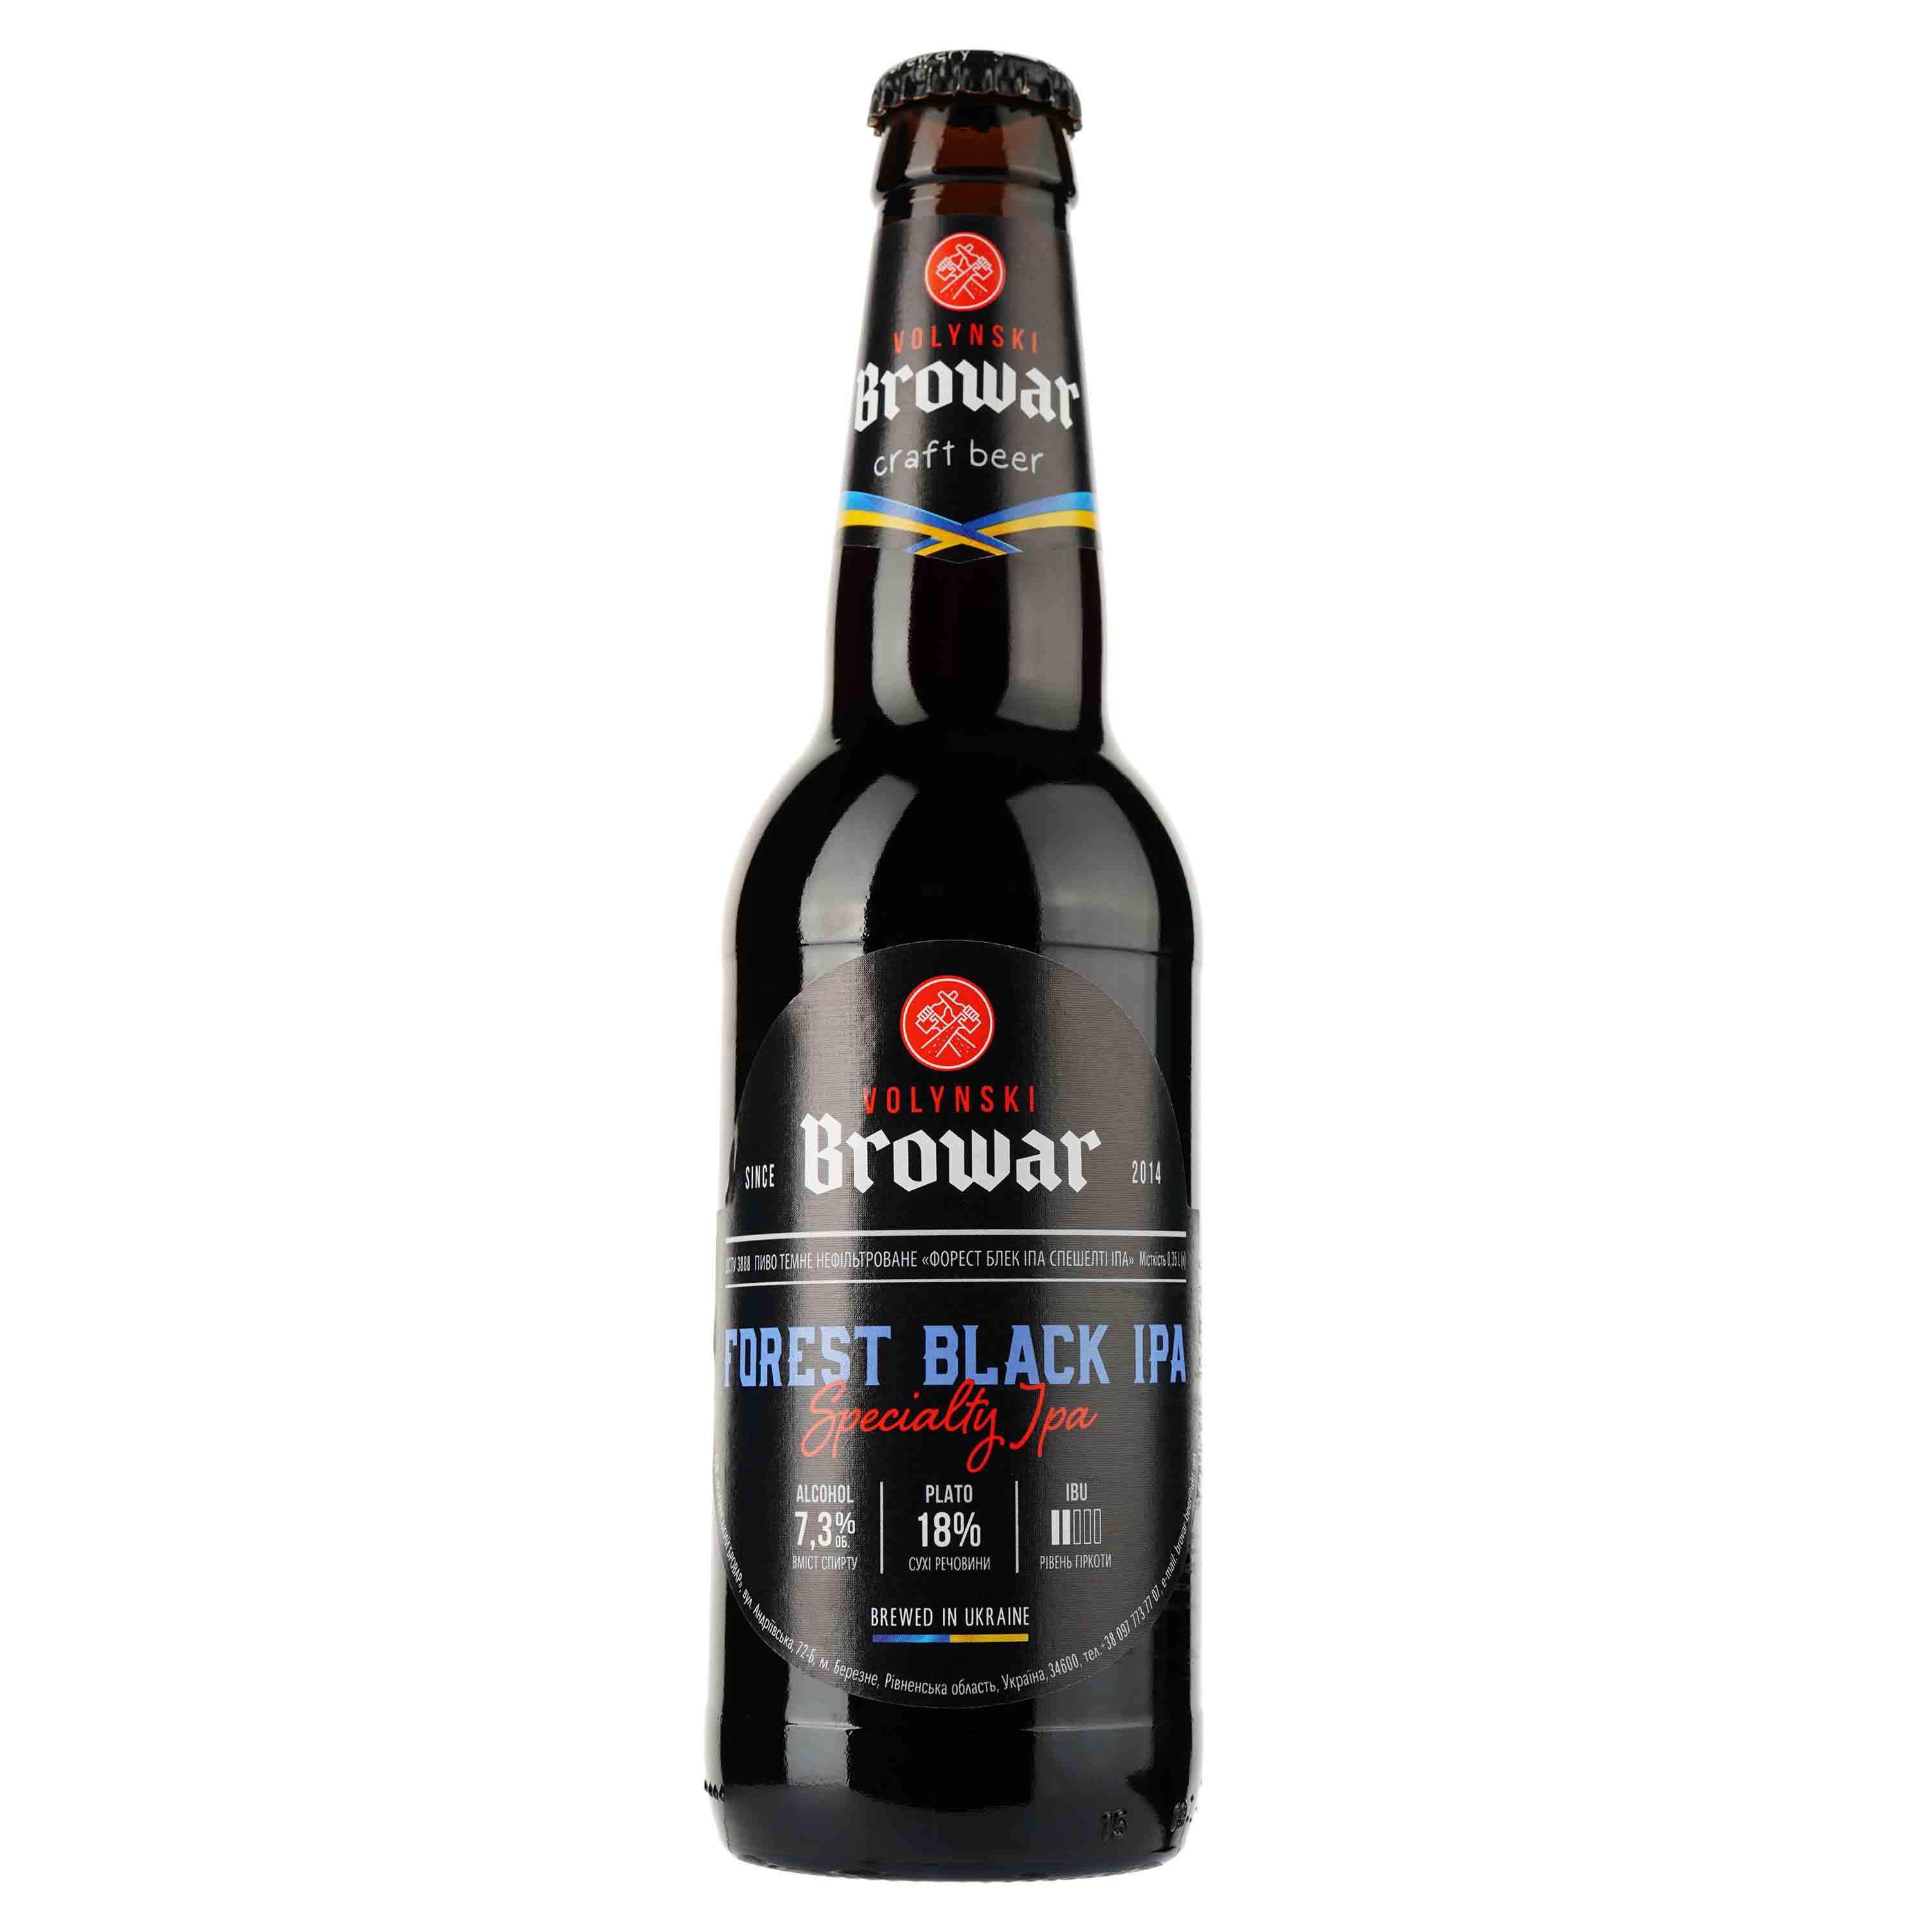 Пиво Volynski Browar Forest Black IPA, темное, нефильтрованное, 7,3%, 0,35 л - фото 1